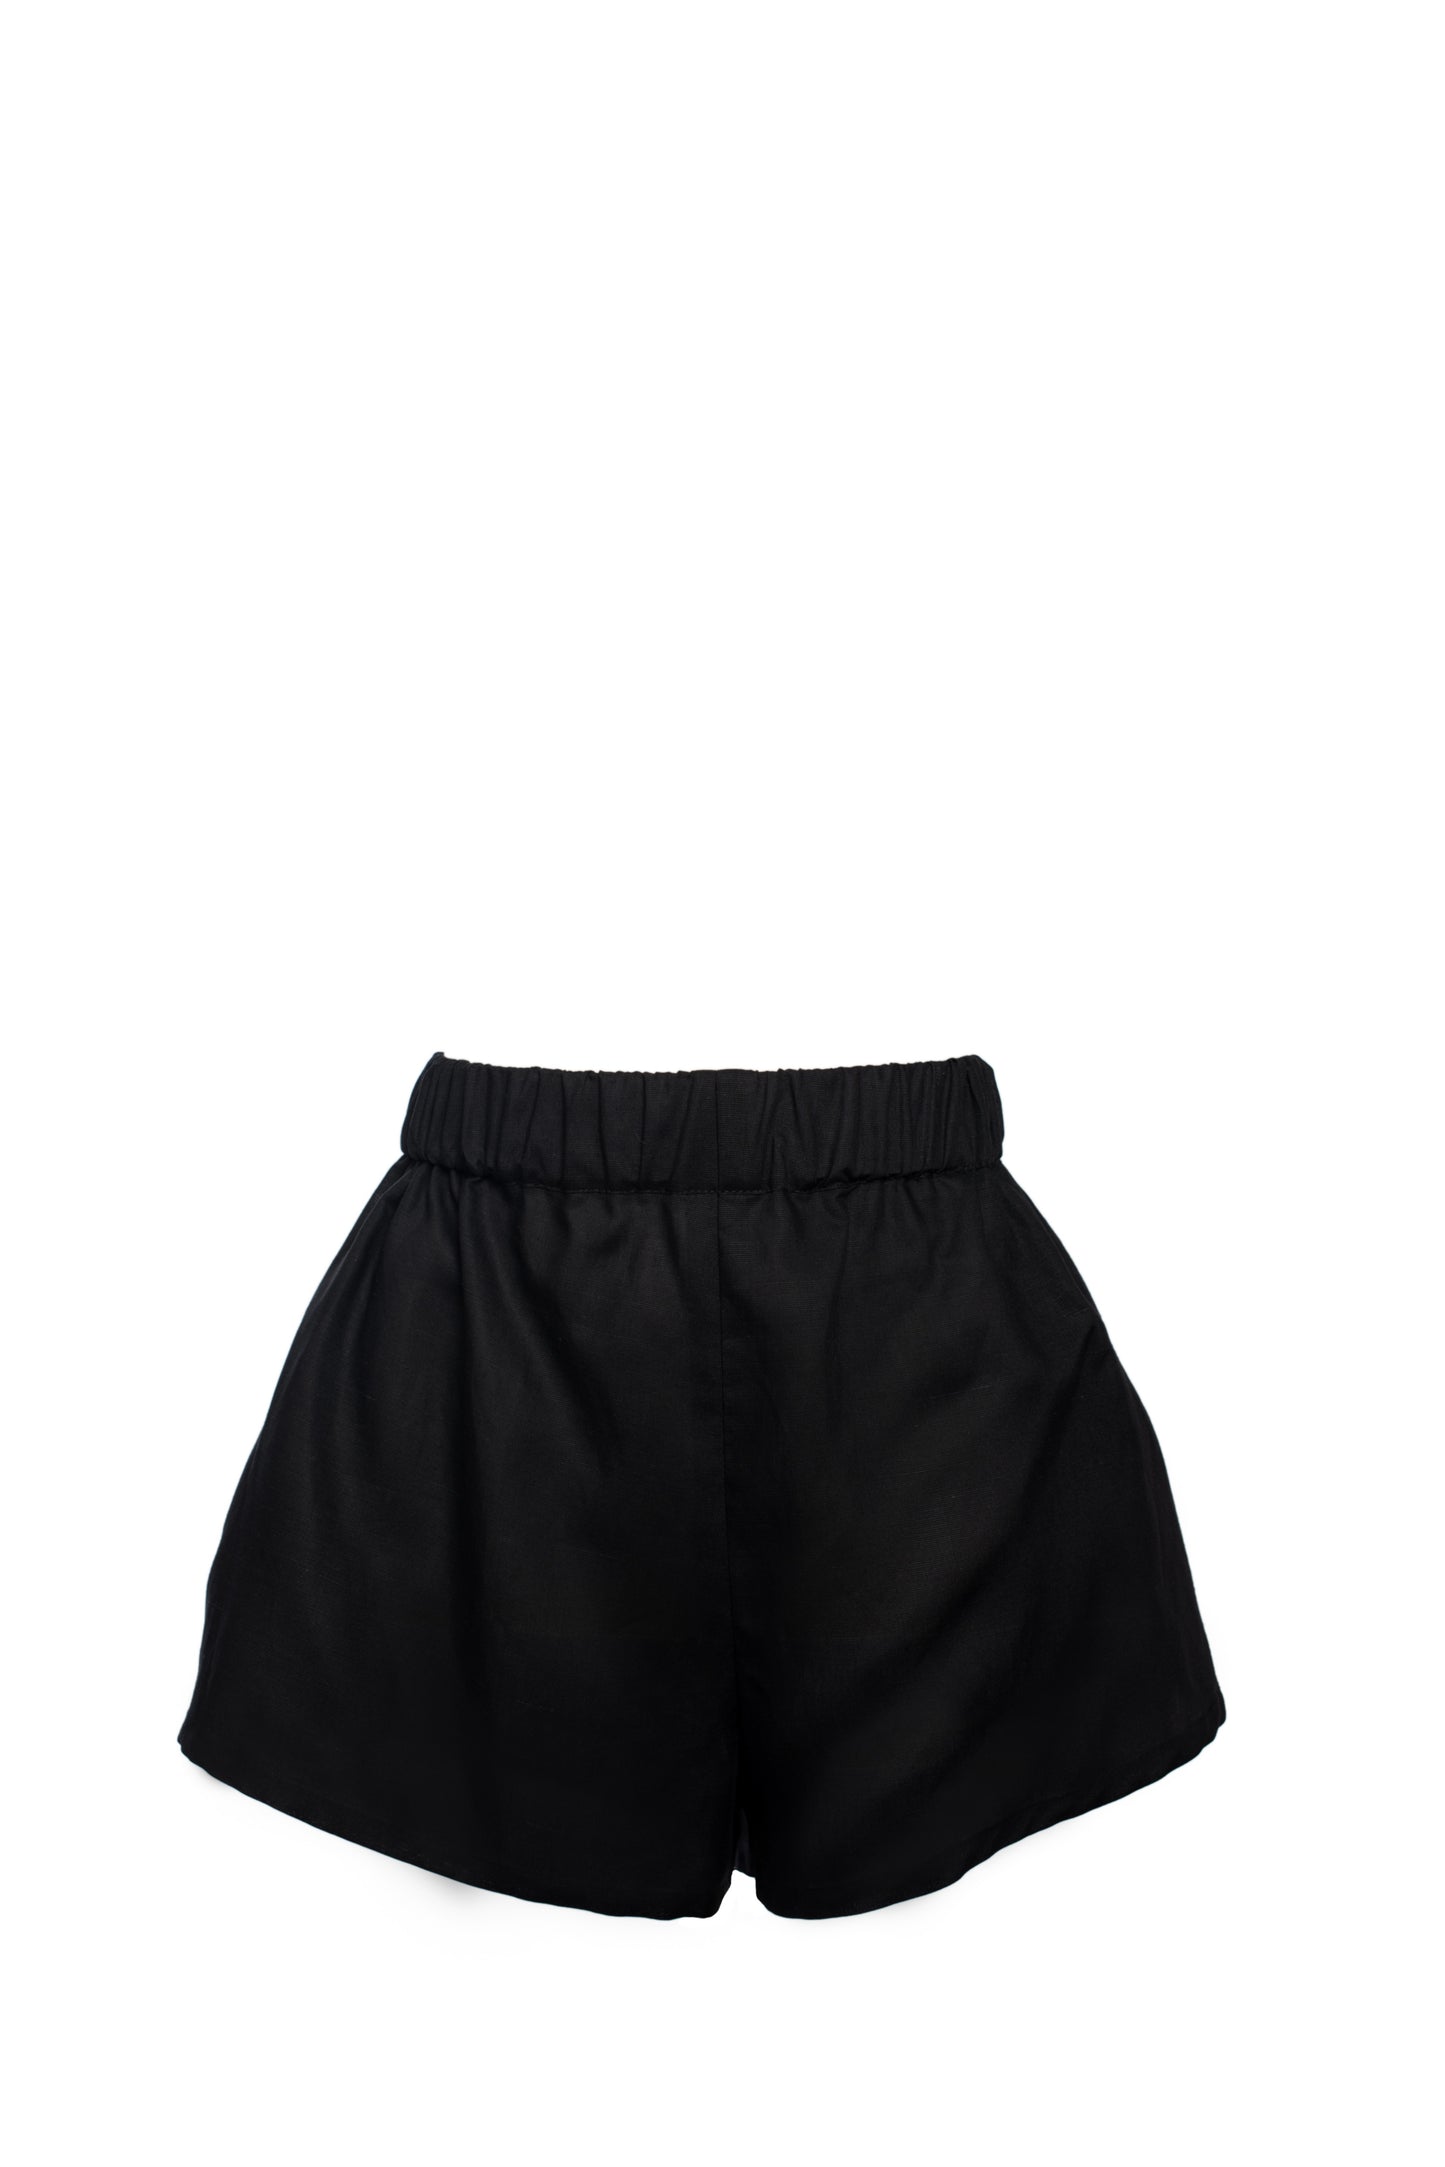 Joann | black shorts